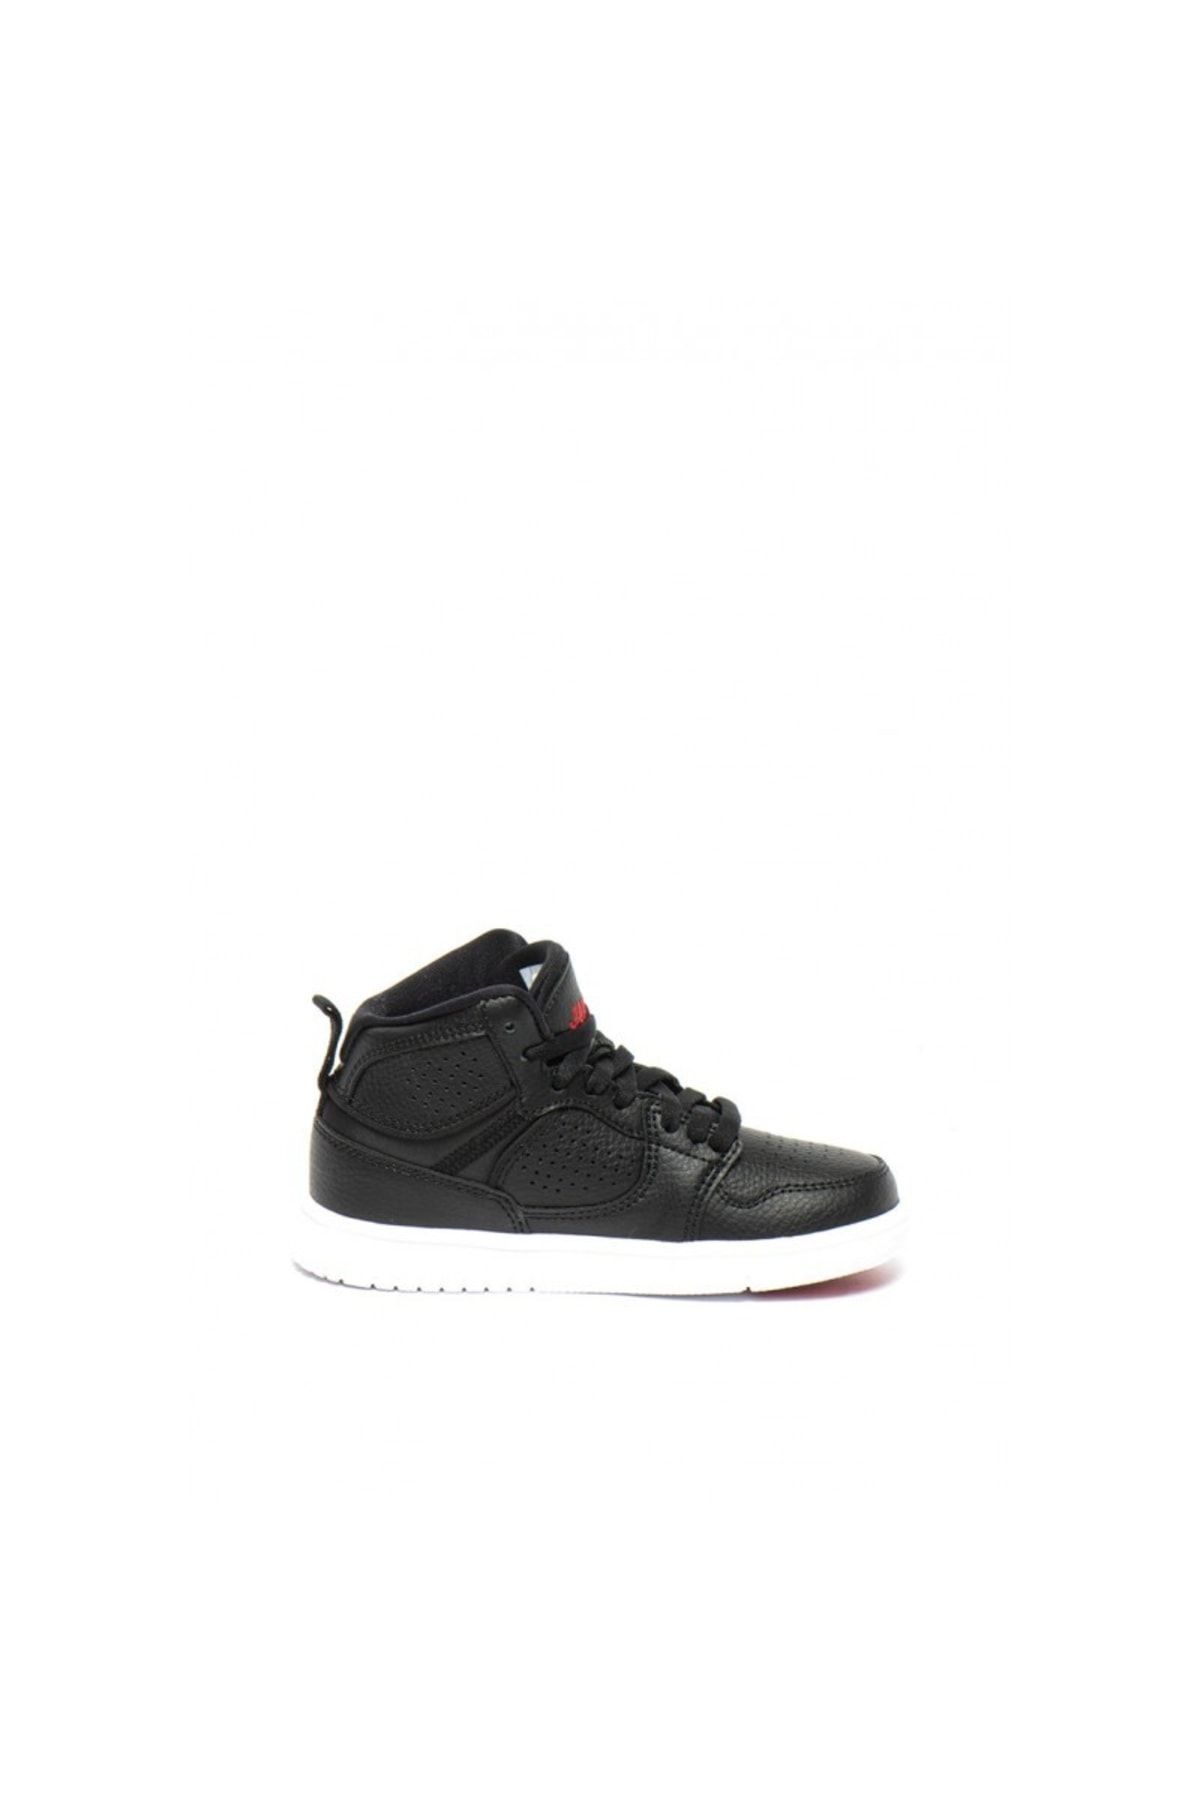 Nike Jordan Access Çocuk Spor Ayakkabı Siyah/gym Kırmızı/beyaz Av7942 001 Kalıp 1 Numara Dardır